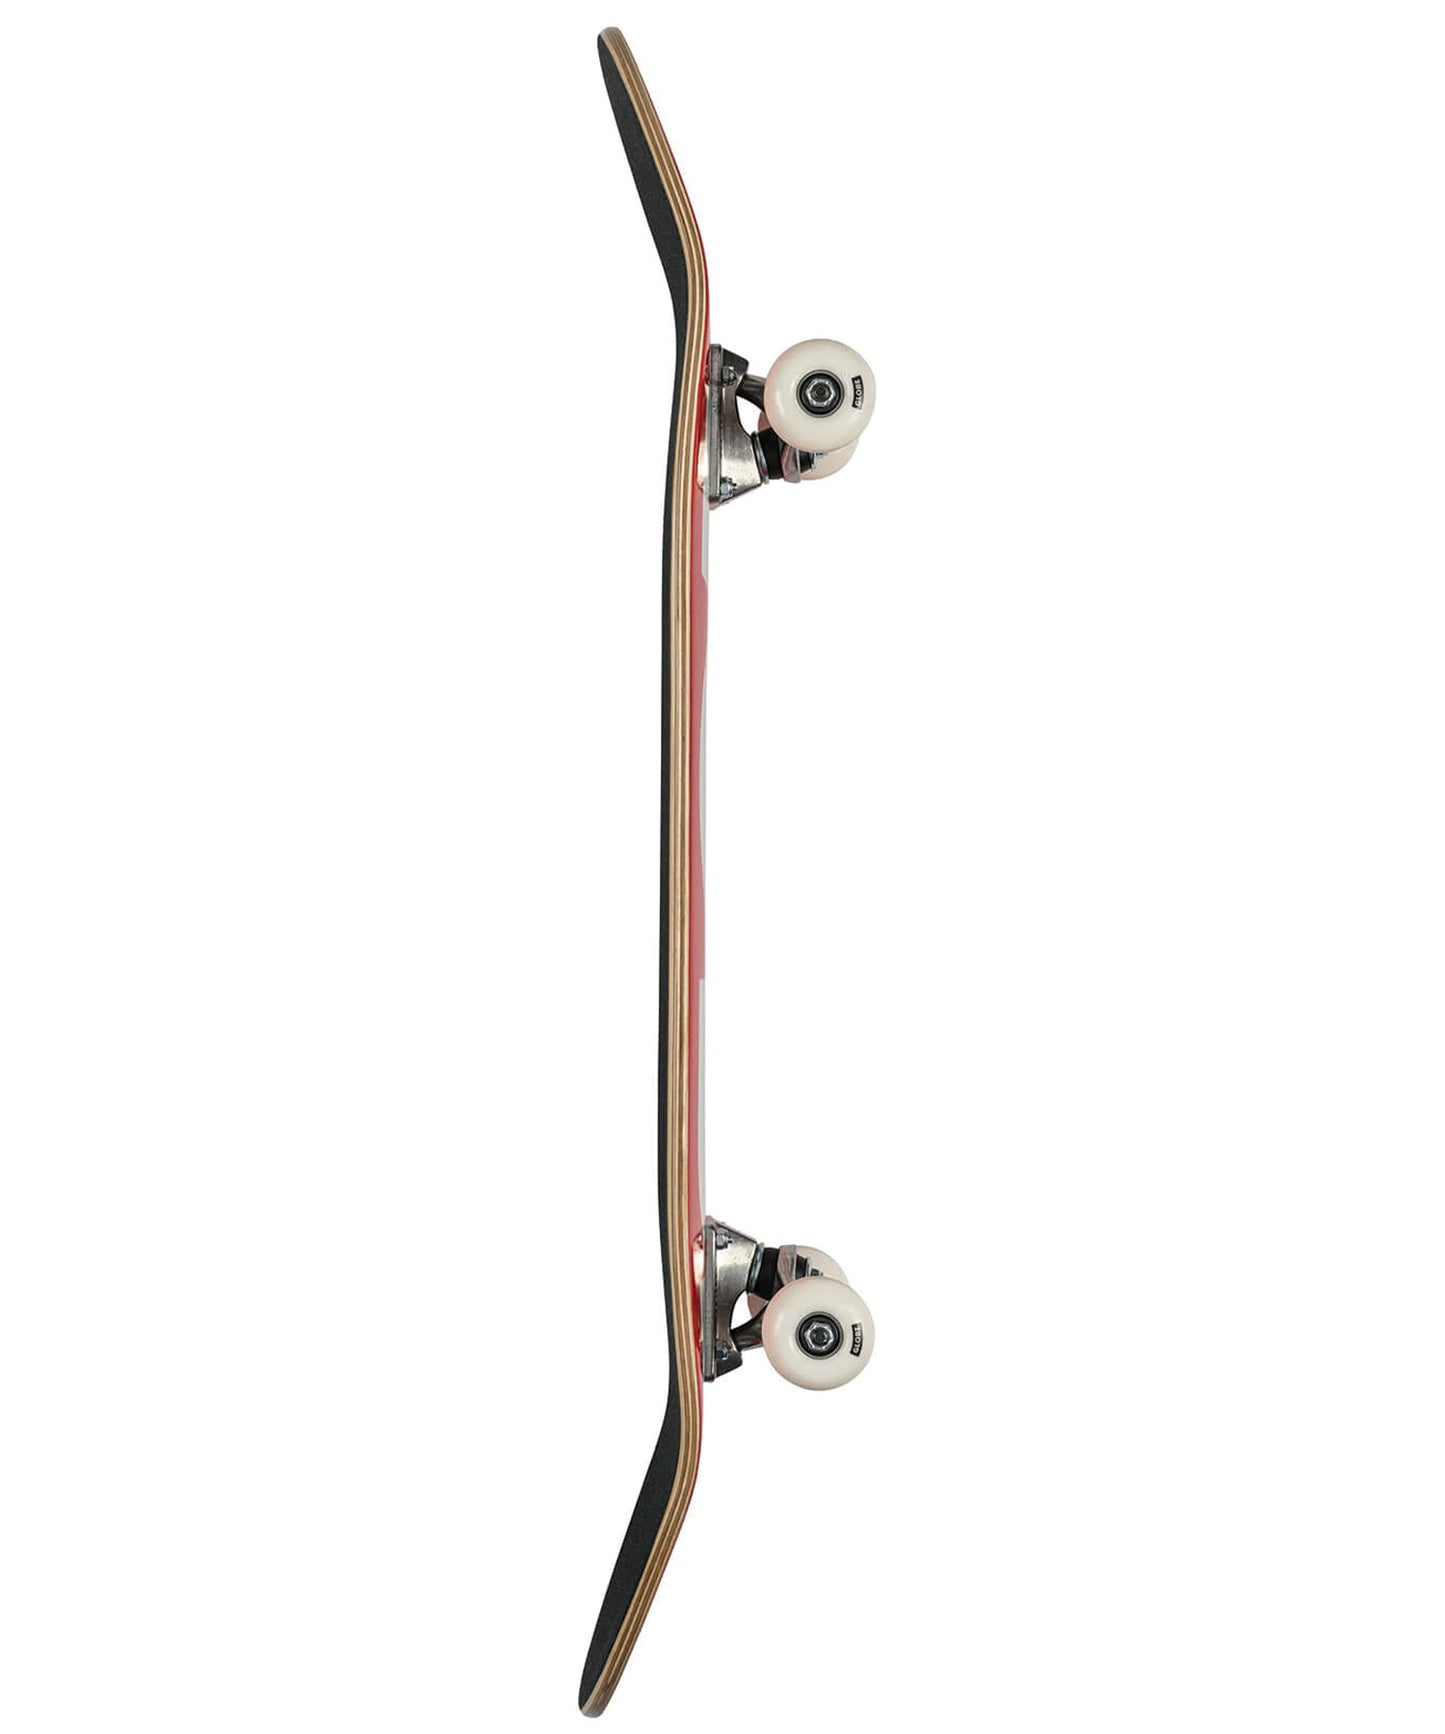 globe skate completo-fubar-red-white-7 láminas de arce-epoxi-cóncavo suave-a punto para patinar-ejes tensor-ruedas 52mm-99a